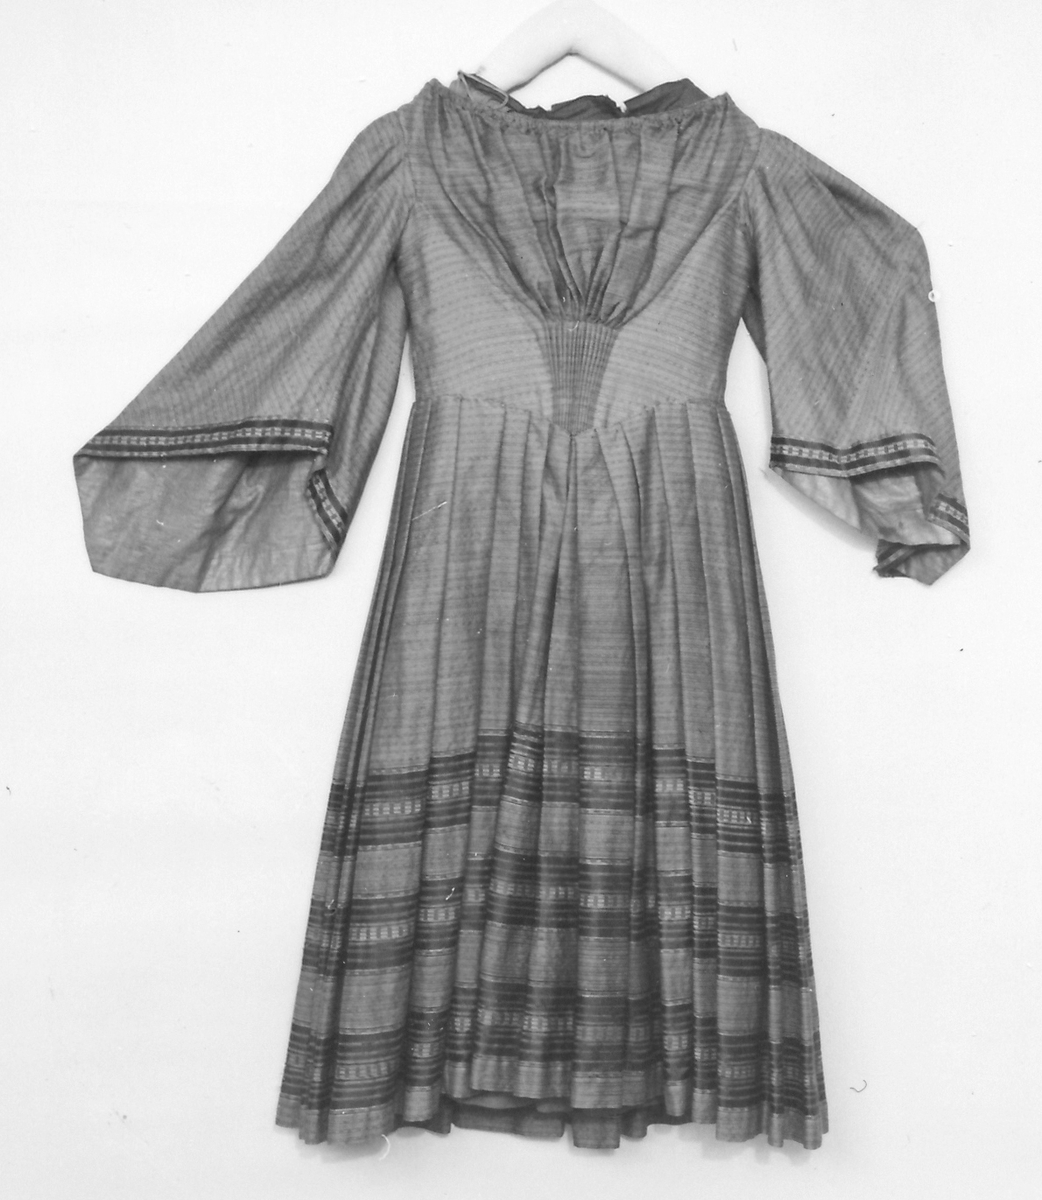 Klädning, barége, brun, randig, veckad tunick 1850-talet.